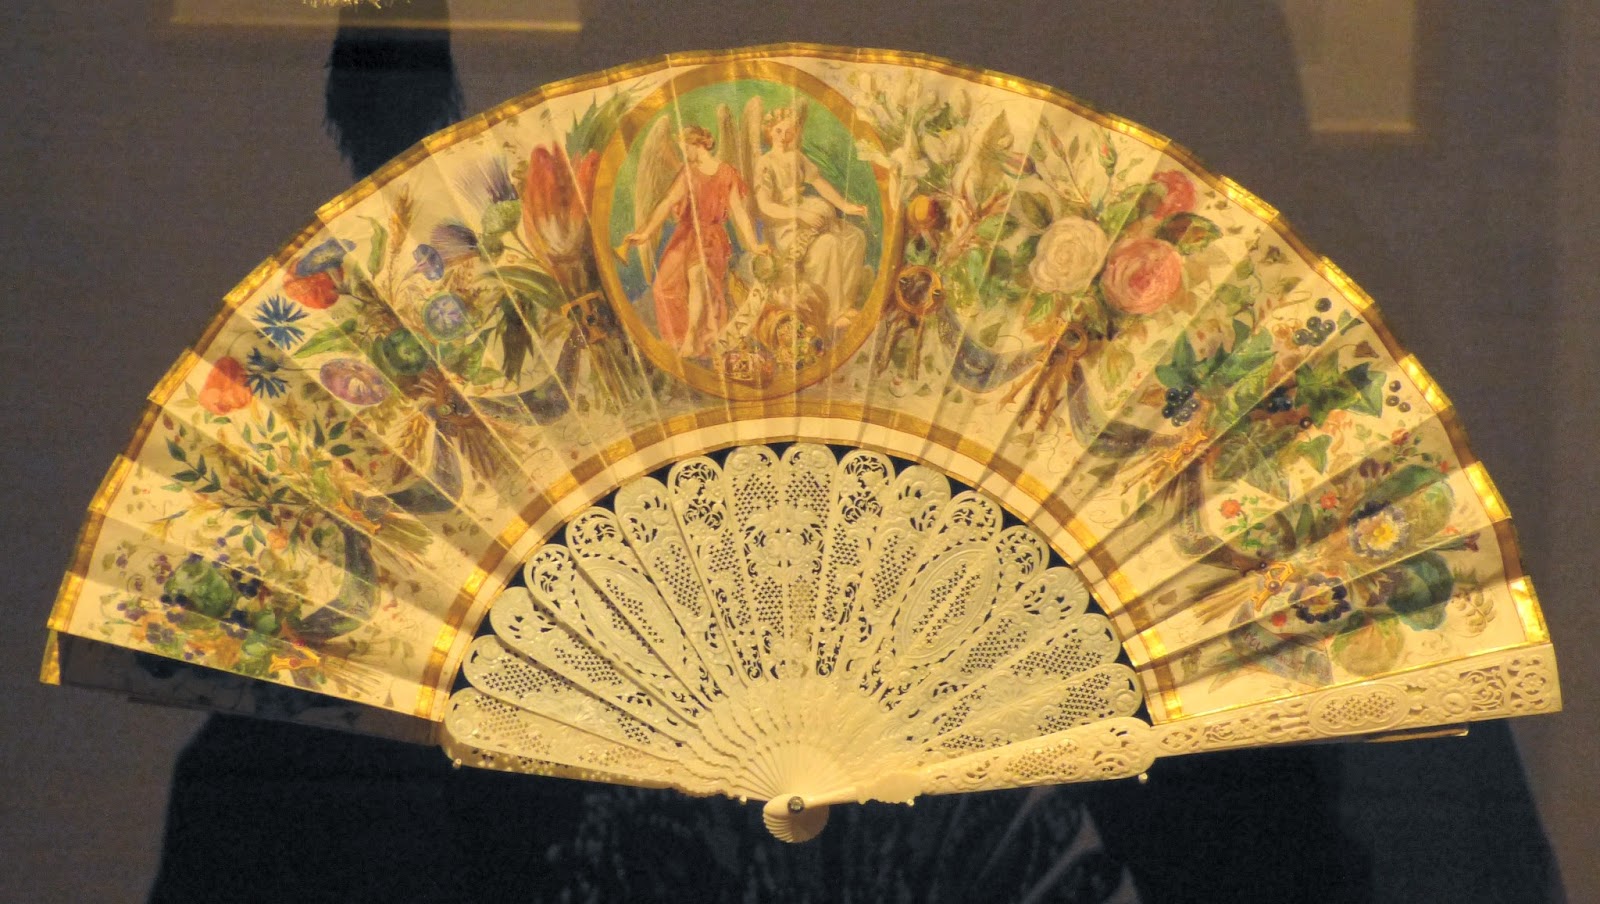 The Princess Royal's fan (1856)